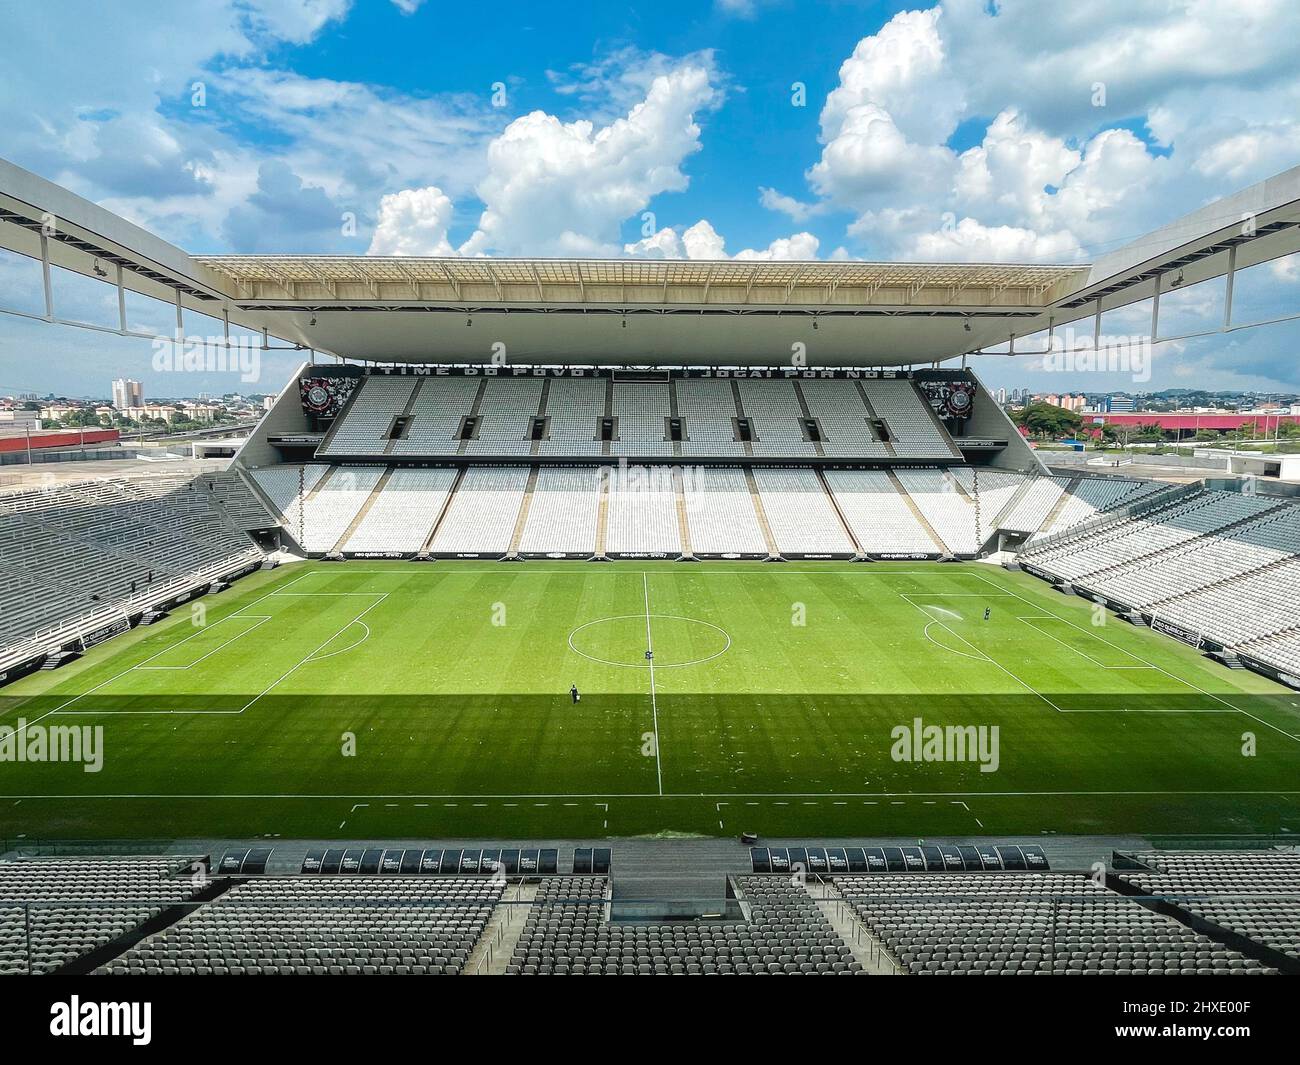 Neo Química Arena, estádio do Corinthians, é eleito o mais bonito do Brasil